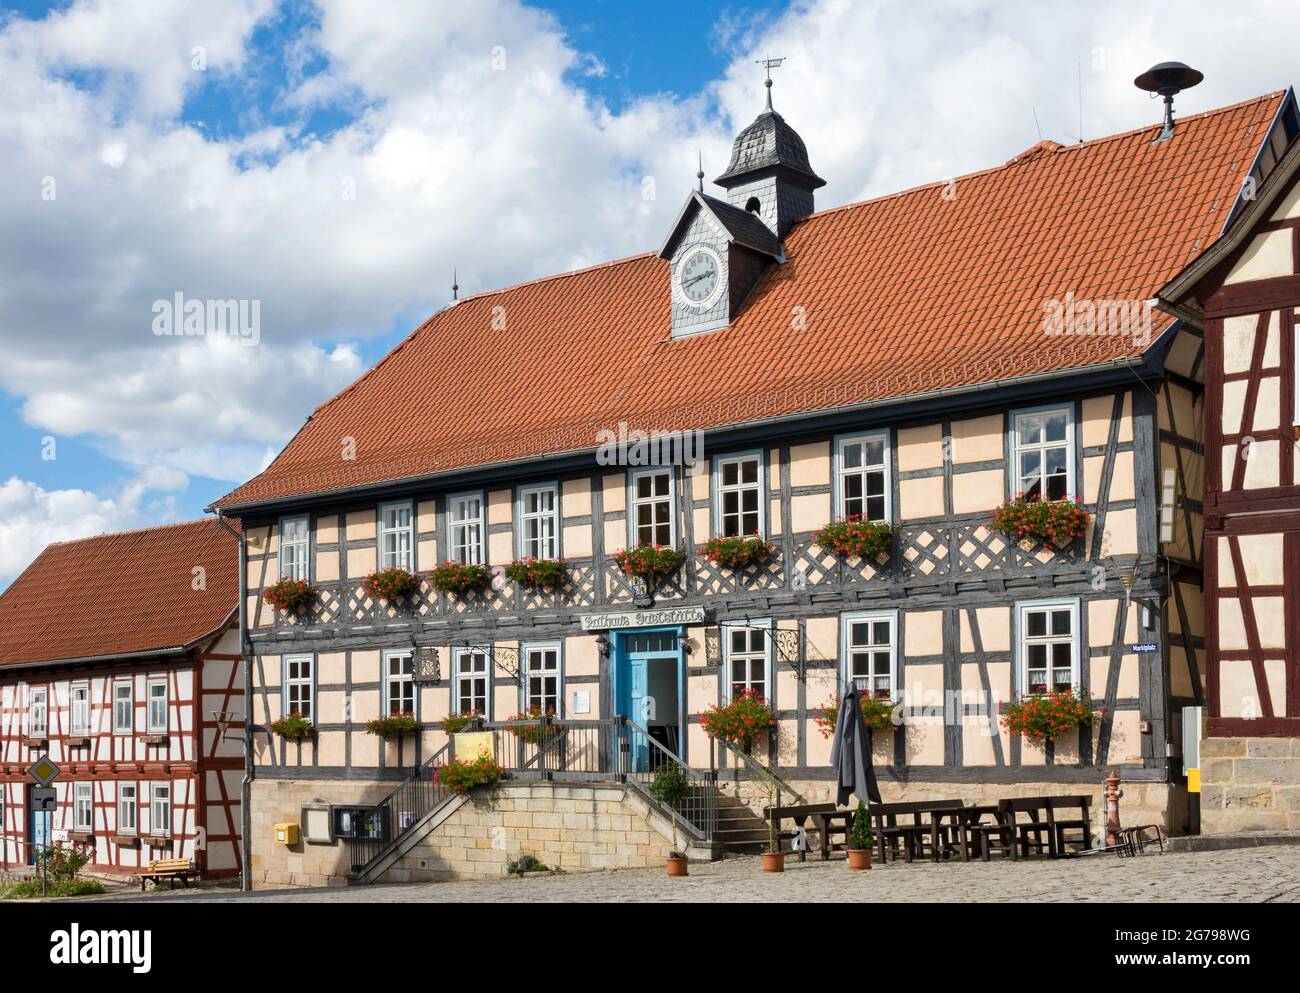 Ummerstadt (2019) è la città più piccola della Turingia. La storica città vecchia di Ummerstadt, in cui si trovano molte case a graticcio, è un edificio storico. La piazza del mercato con lo storico municipio, oggi adibito a ristorante, è particolarmente da vedere. Foto Stock